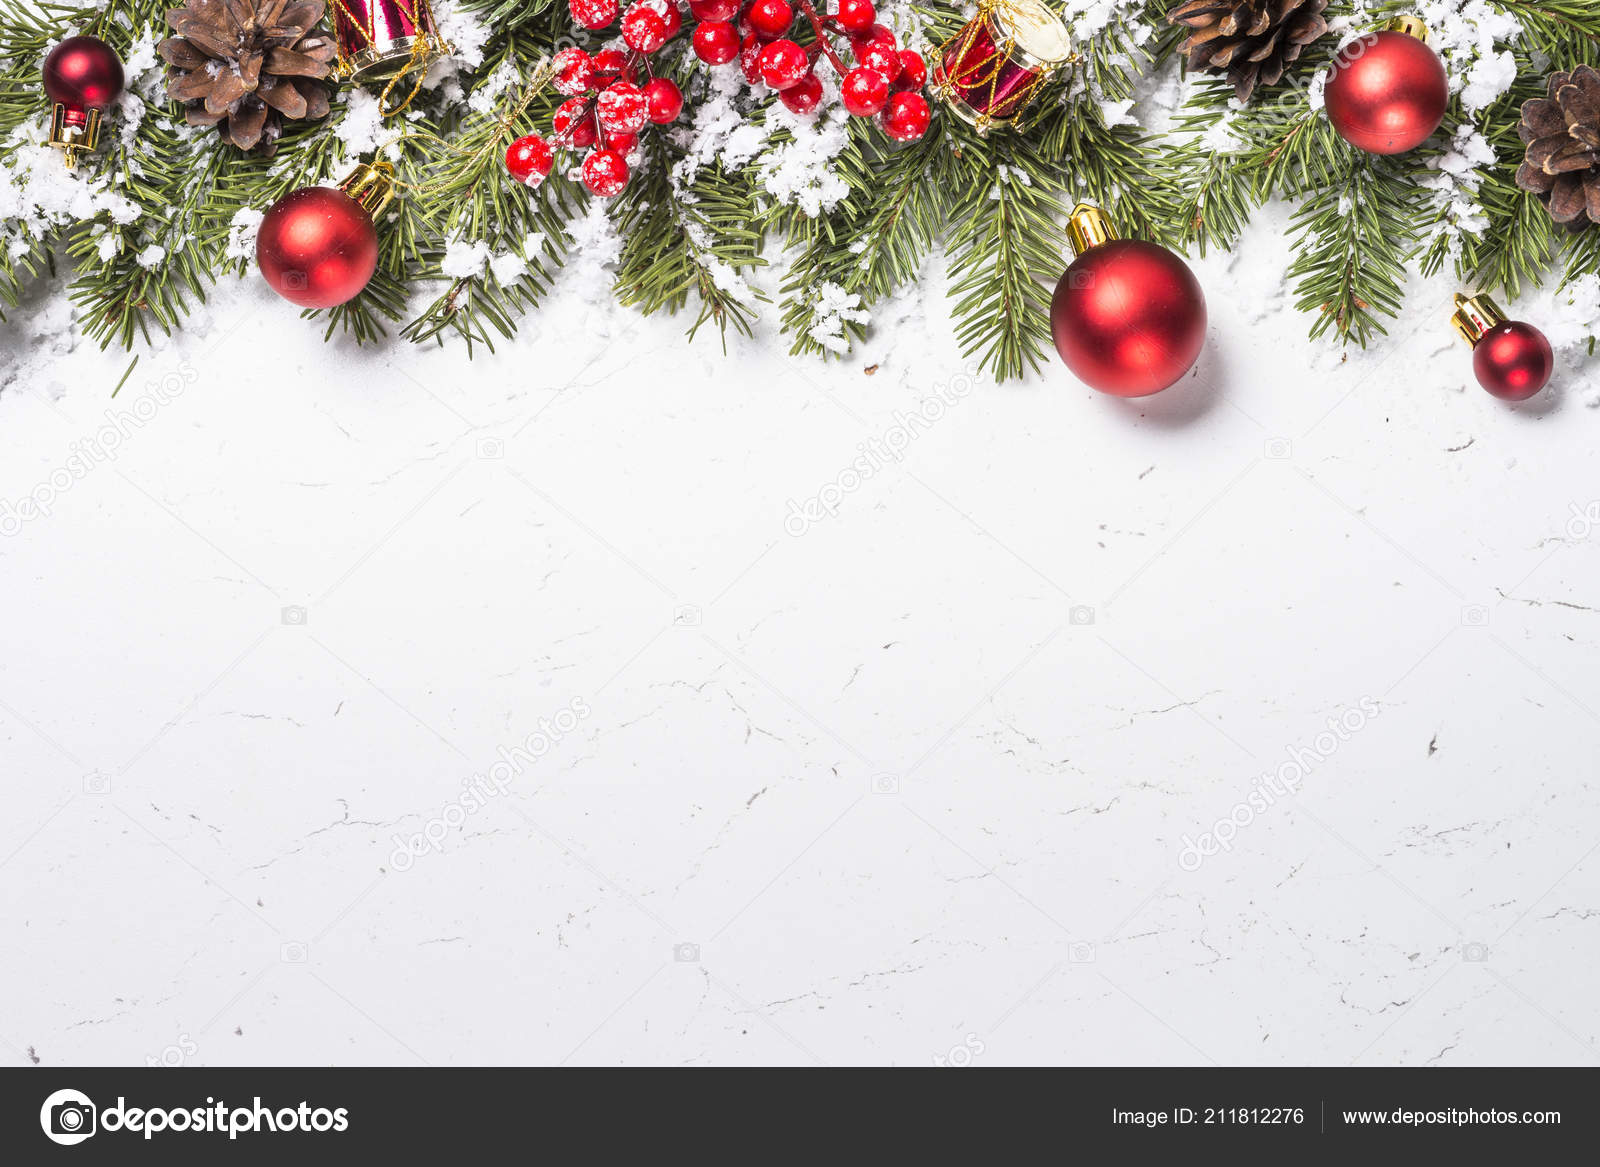 Nếu bạn muốn cập nhật nền trang trí Giáng sinh đầy sắc màu và ấm áp thì hãy chuẩn bị ngay hình nền Giáng sinh đỏ trang trí cho thiết bị của mình. Hình nền này sẽ mang đến cho bạn một không gian Giáng sinh ấm áp và đặc biệt hơn.